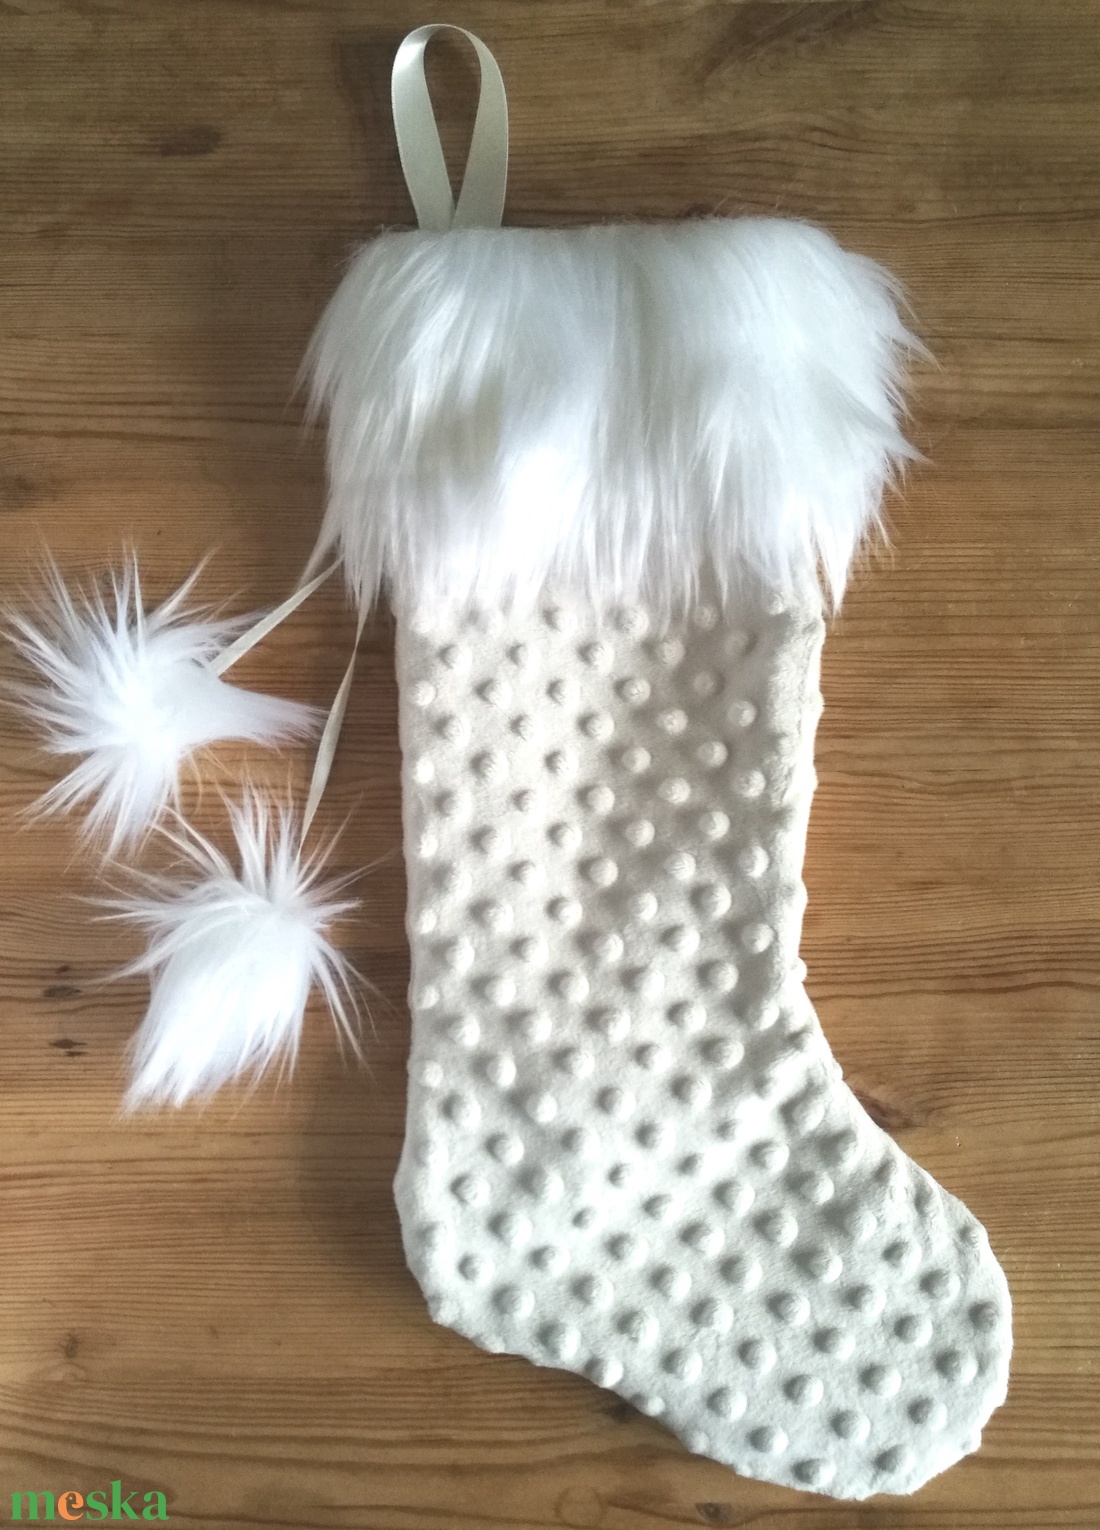 Mikulás zokni natúr fehér krém színű pliss, elegáns hosszú műszőrmével, karácsonyo dísz zokni, Mikulás csizma ajándék - karácsony - mikulás - mikulás zsák, zokni, csizma - mikulás - Meska.hu